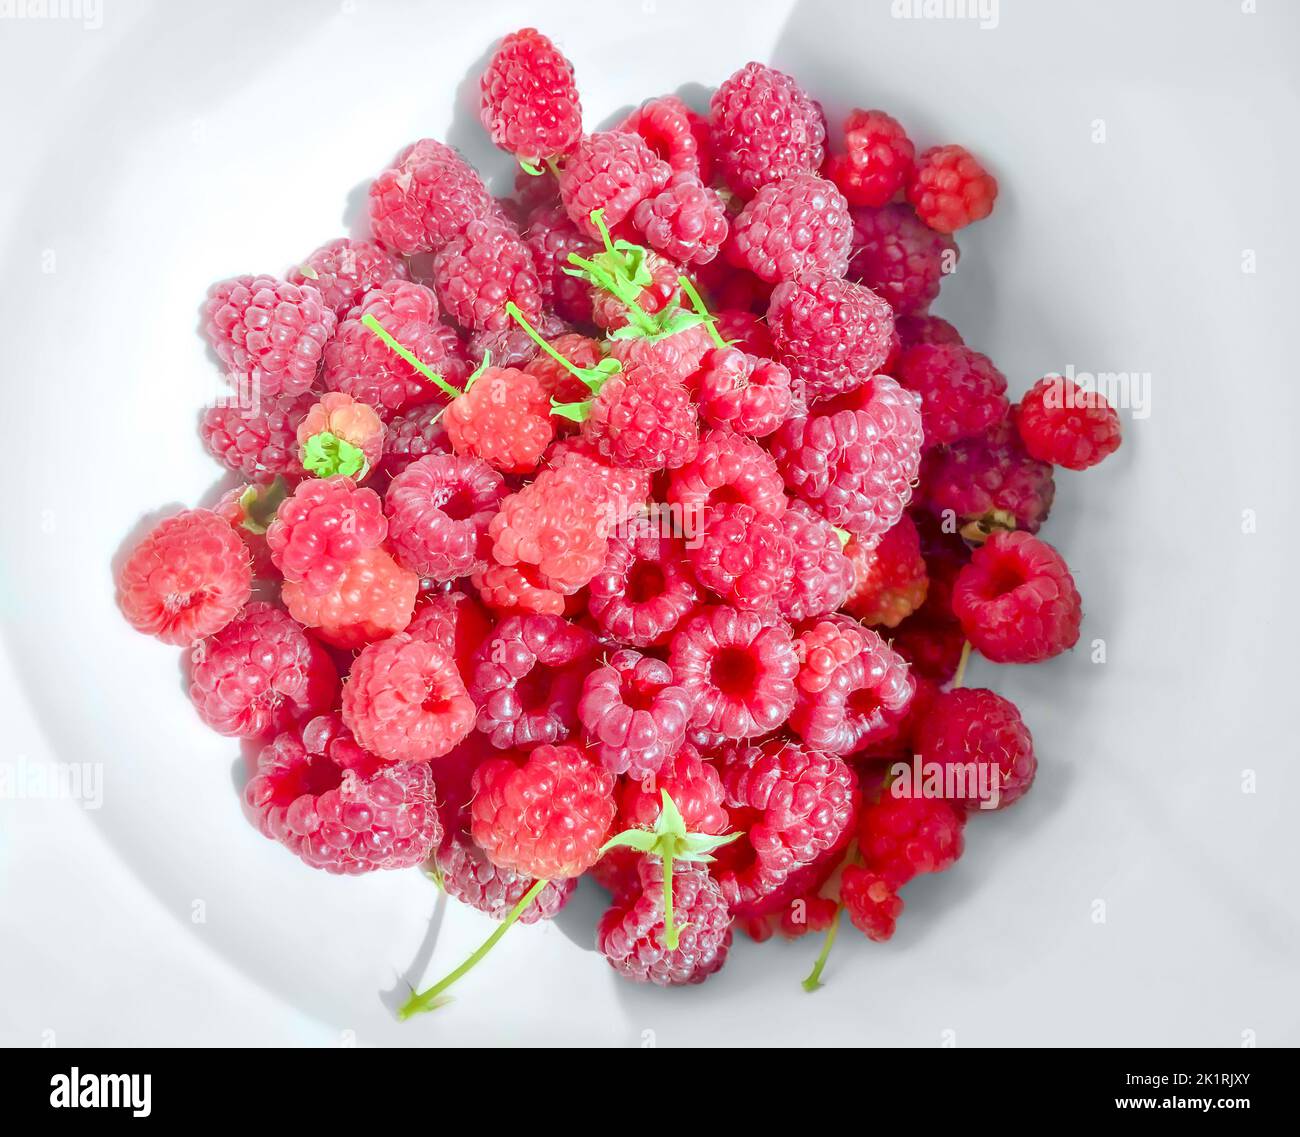 Lamponi freschi interi su un piatto bianco, dall'alto. Frutti freschi, maturi, rossi e dolci del Rubus idaeus, il lampone europeo coltivato. Foto Stock